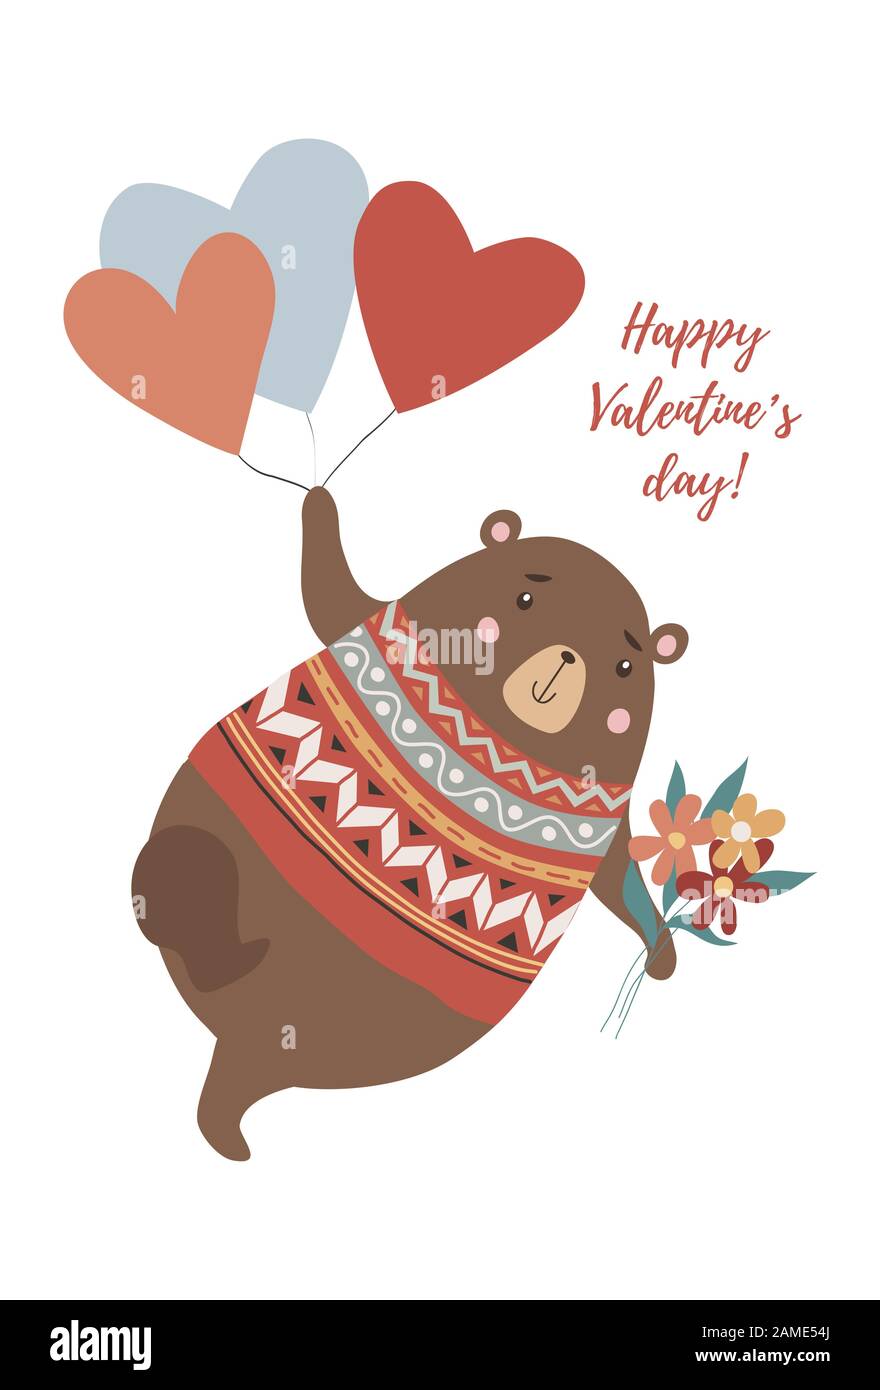 Joli ours avec bouquet de fleurs volantes sur les ballons en forme de coeur dans le style dessiné à la main Illustration de Vecteur